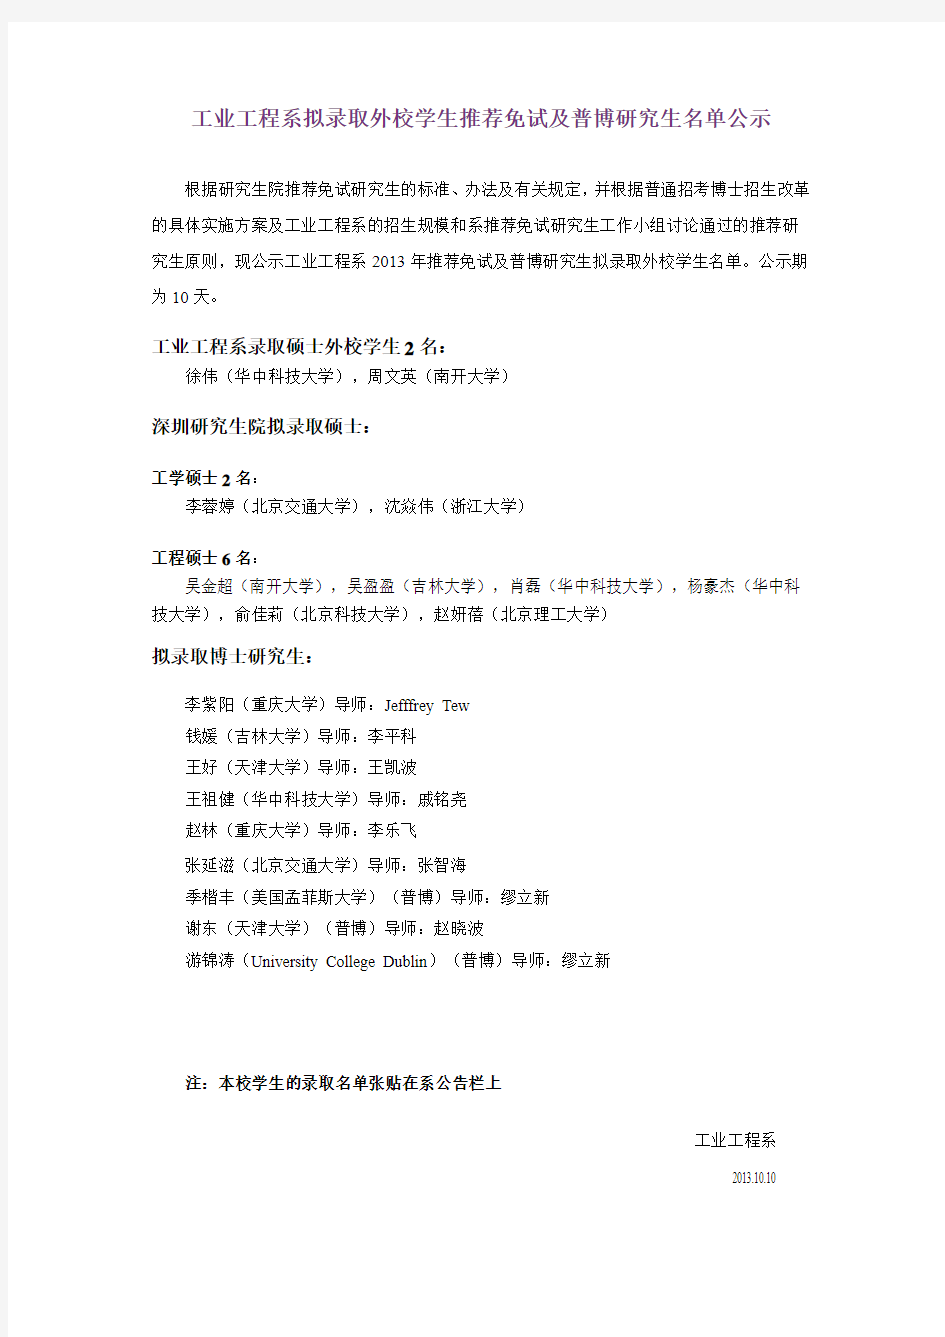 清华大学工业工程系推荐免试保研及普博研究生名单公示